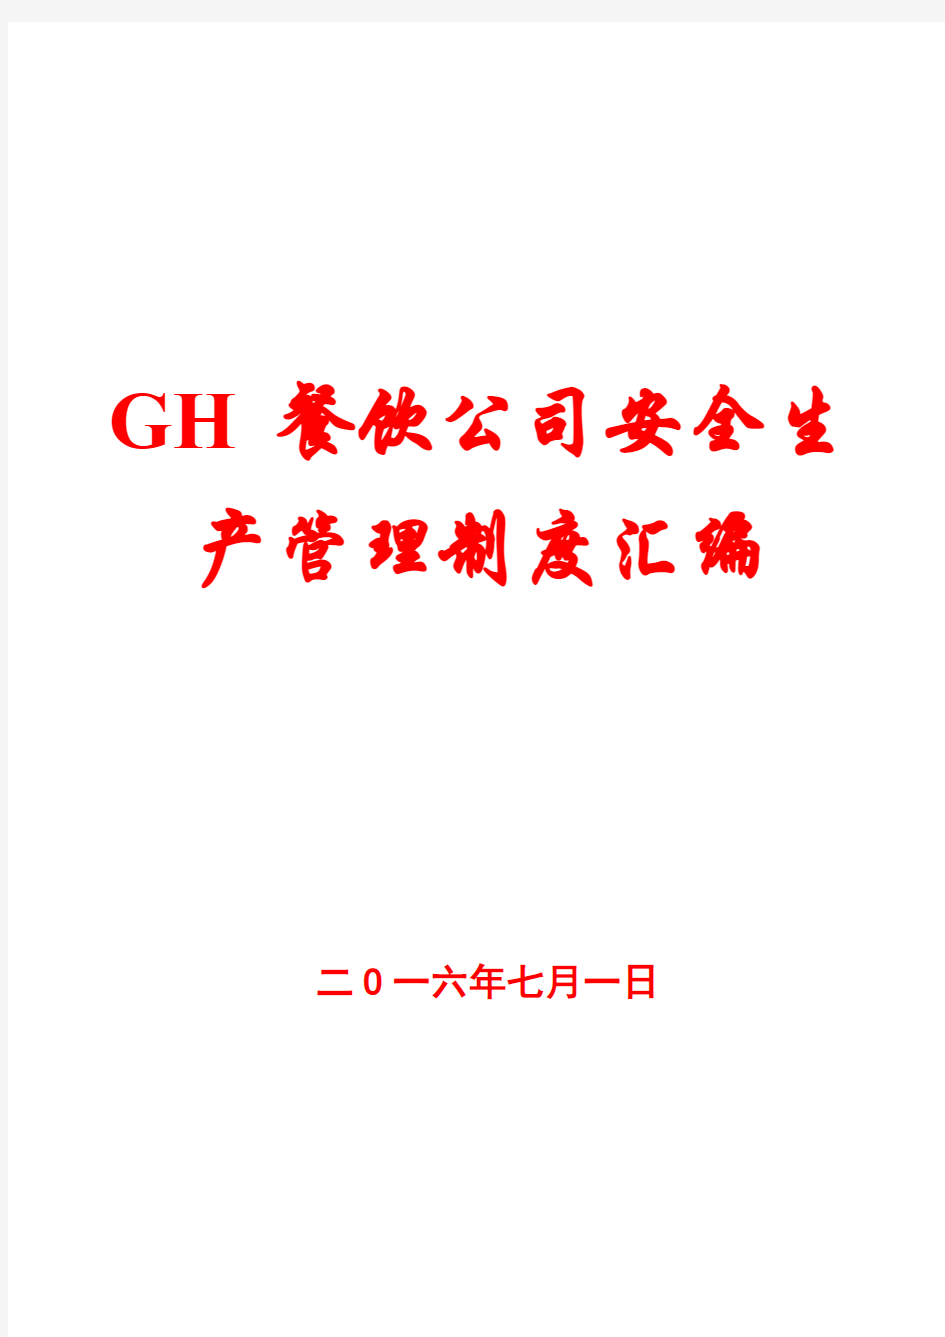 GH餐饮公司安全生产管理制度汇编【一份相当实用的专业资料,绝版经典】8